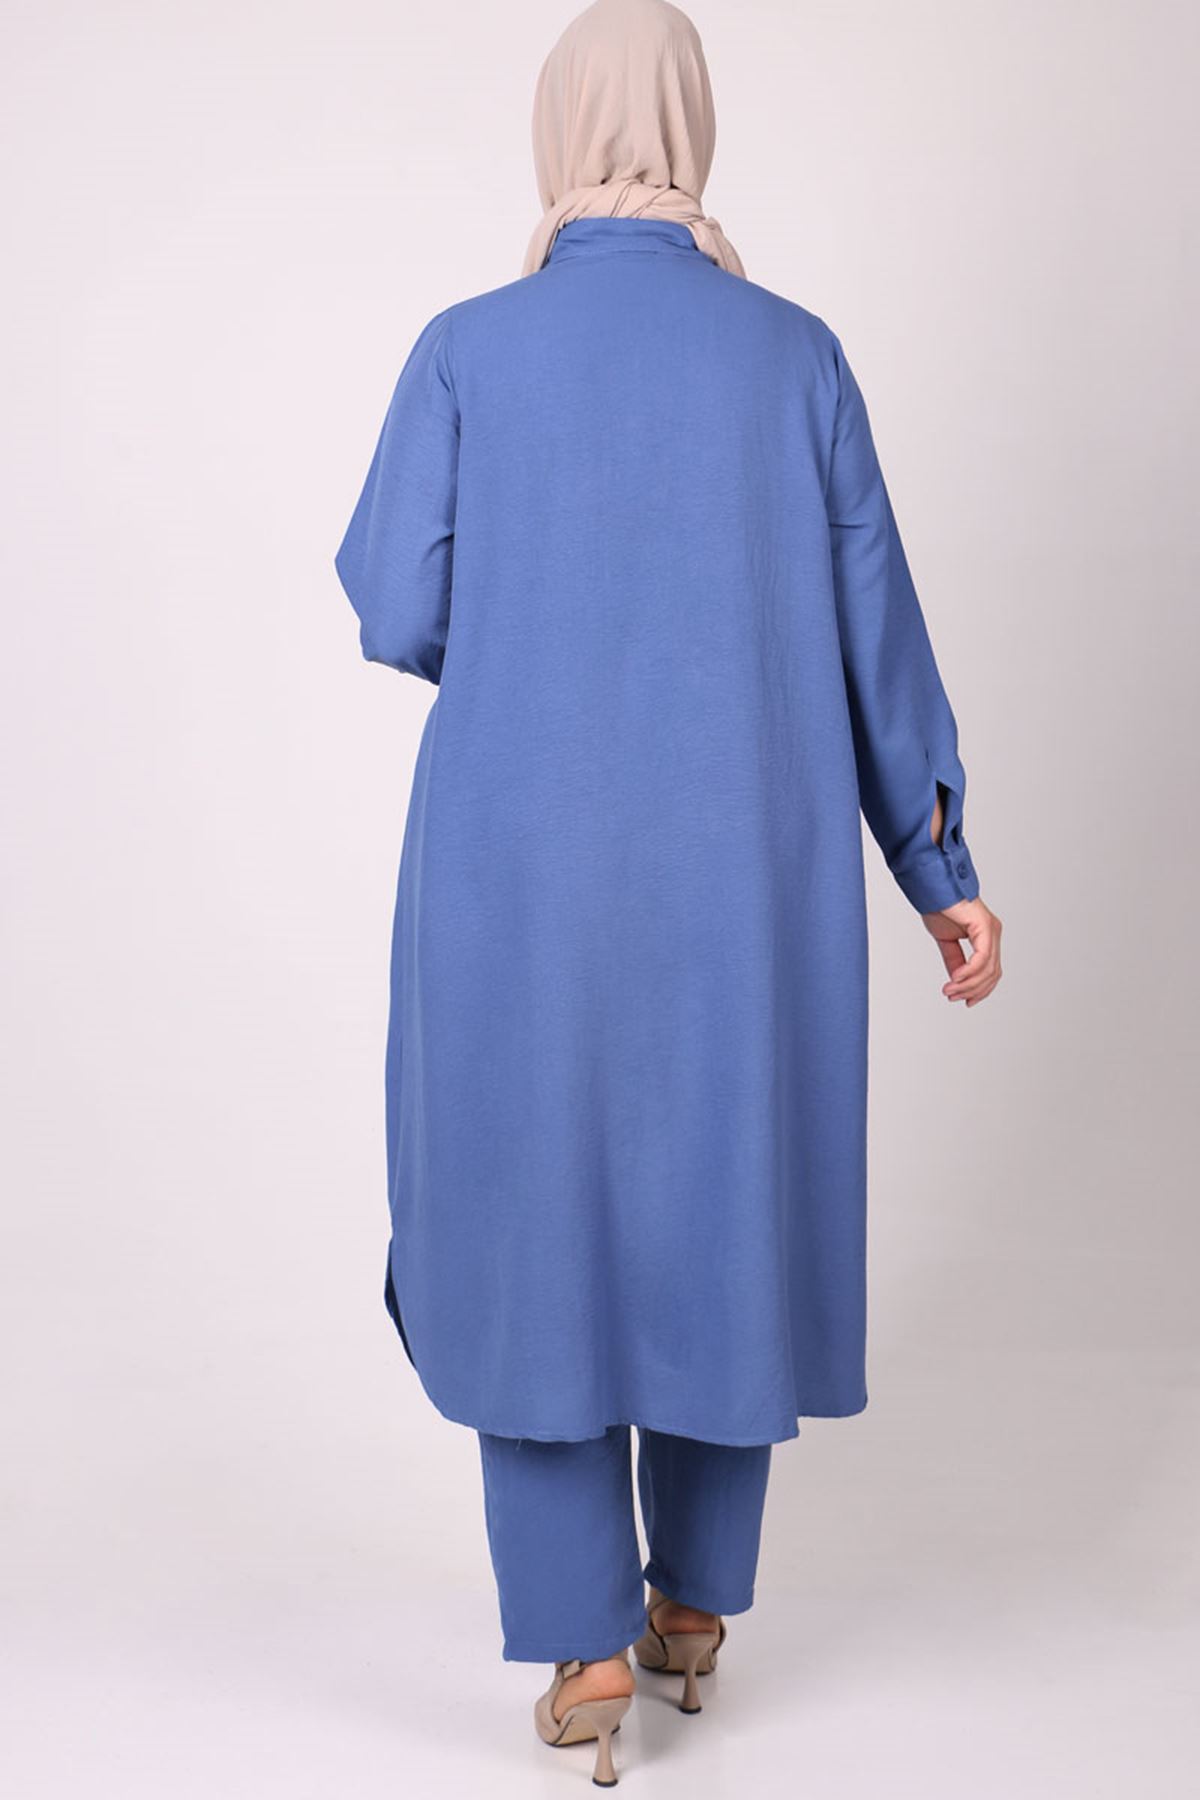 1038 Büyük Beden Mucize Pantolonlu Takım - Mavi